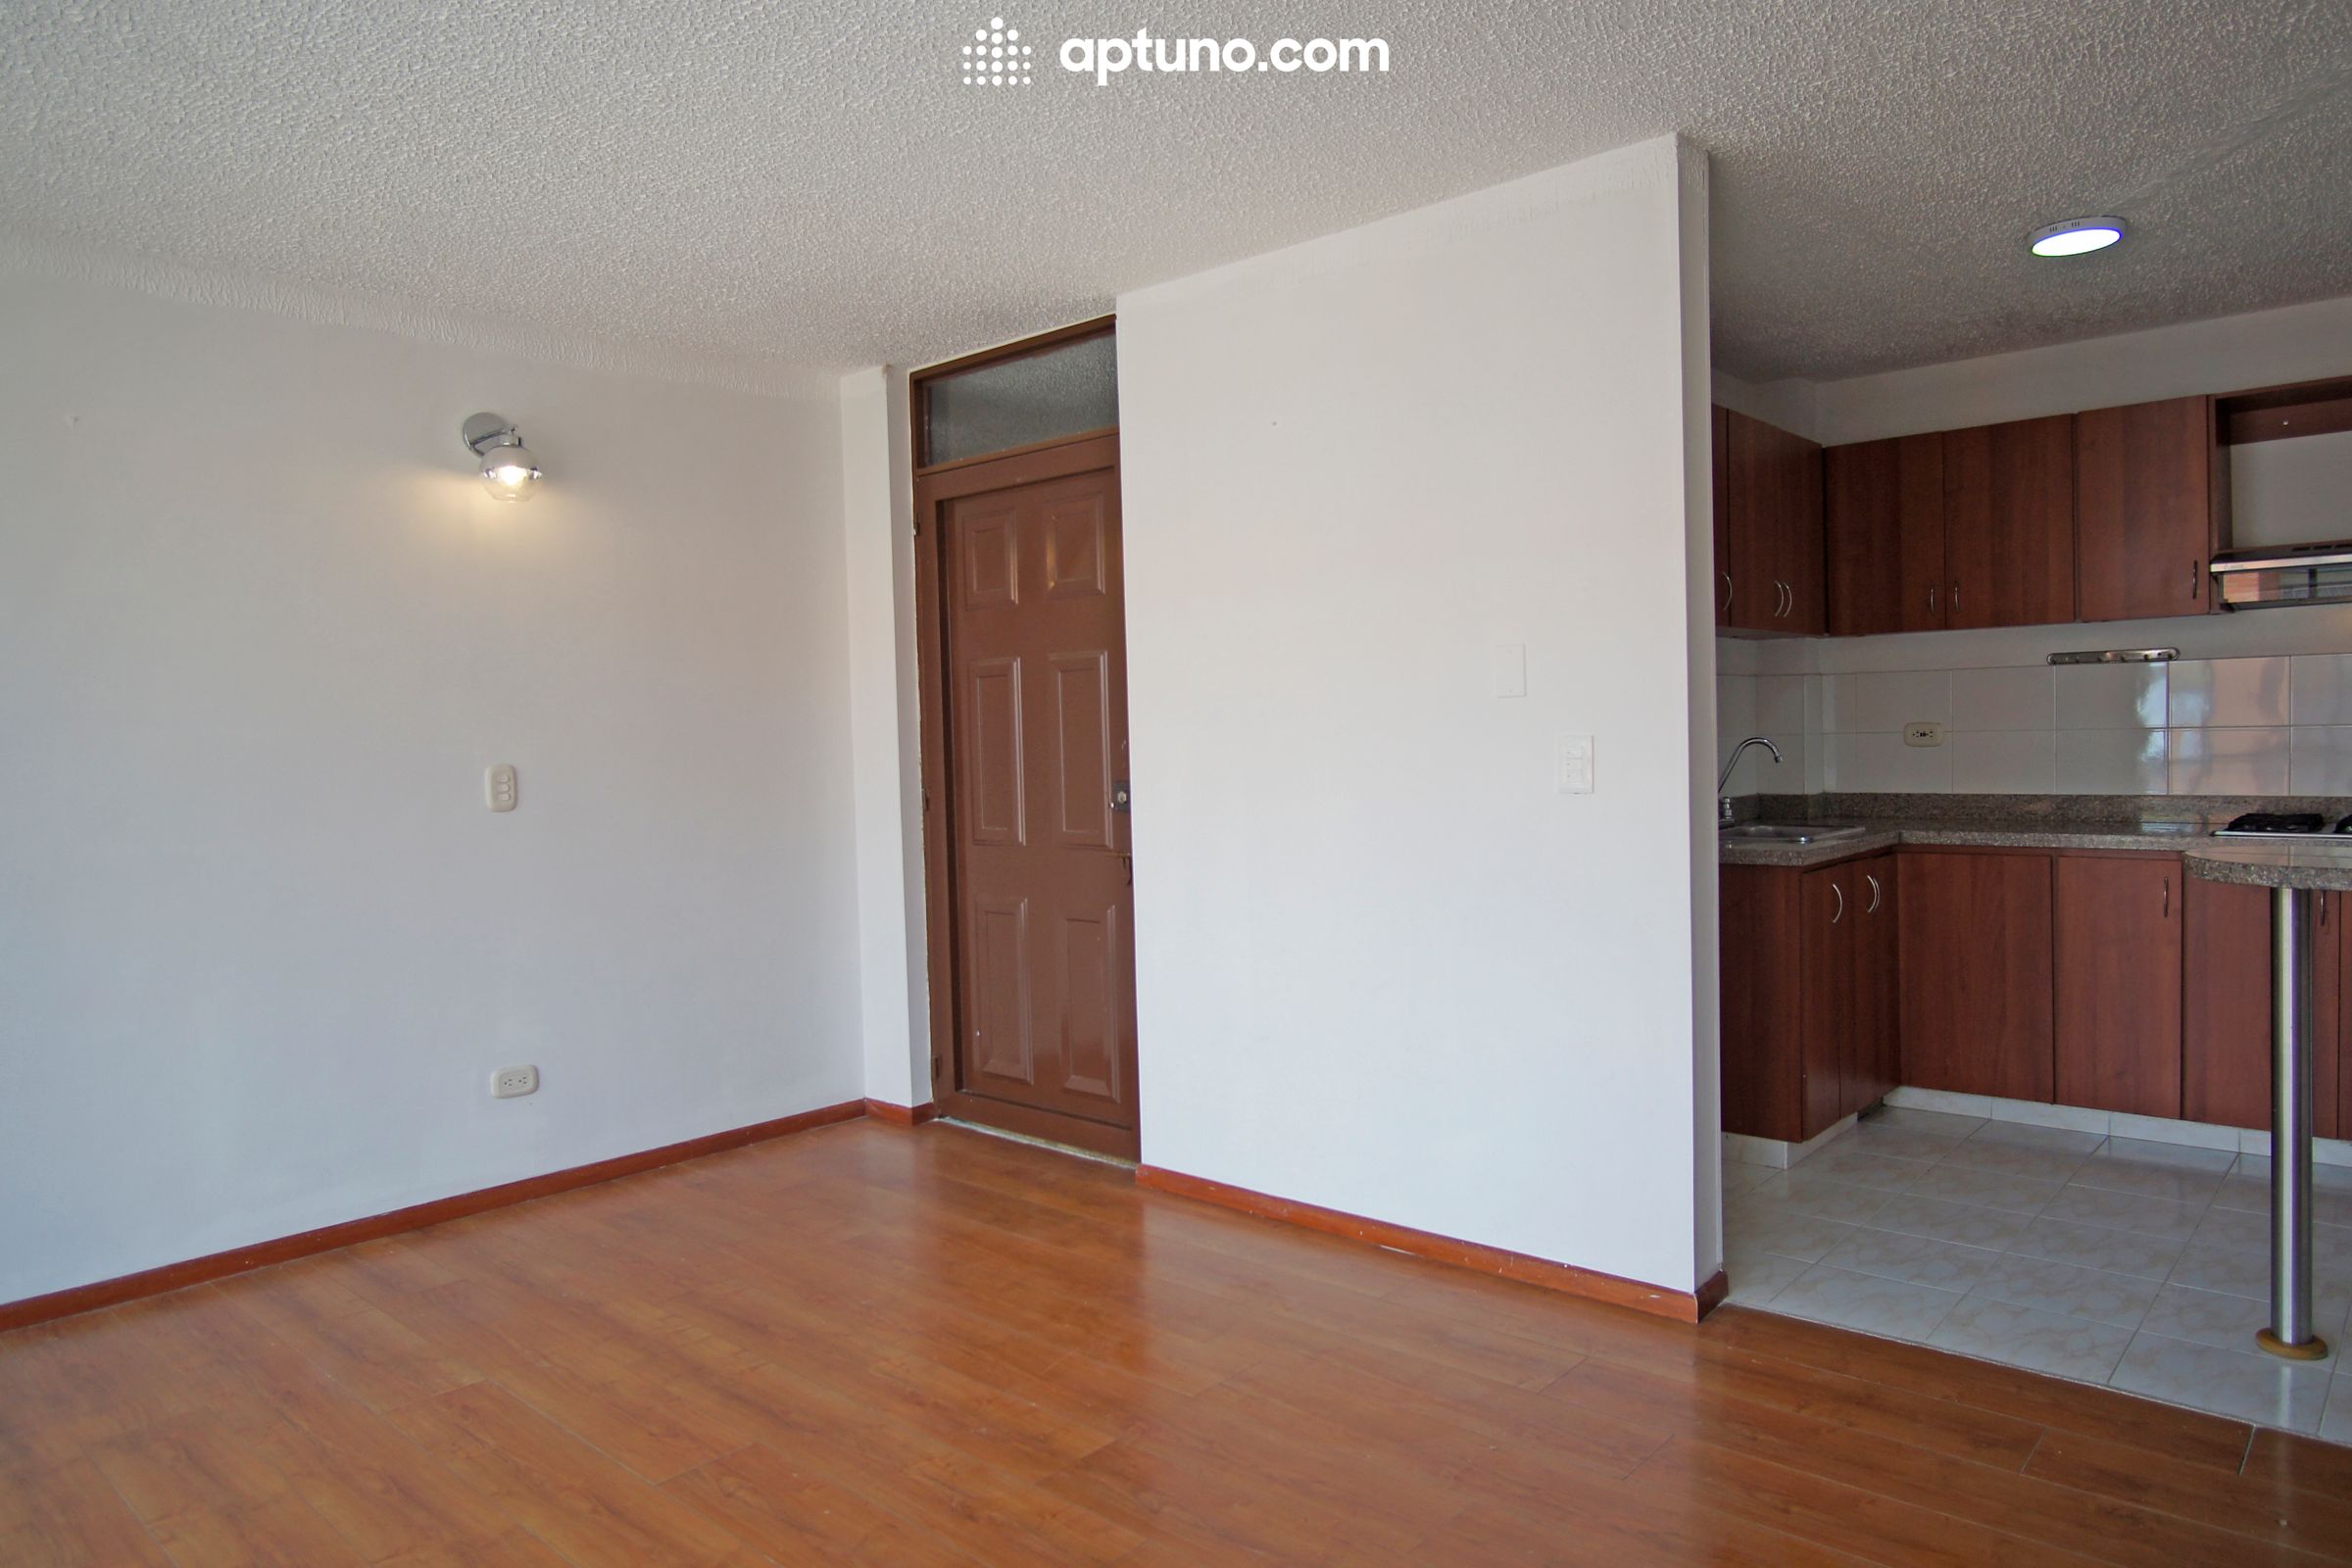 Apartamento en arriendo Zipaquirá 70 m² - $ 1.200.000,00